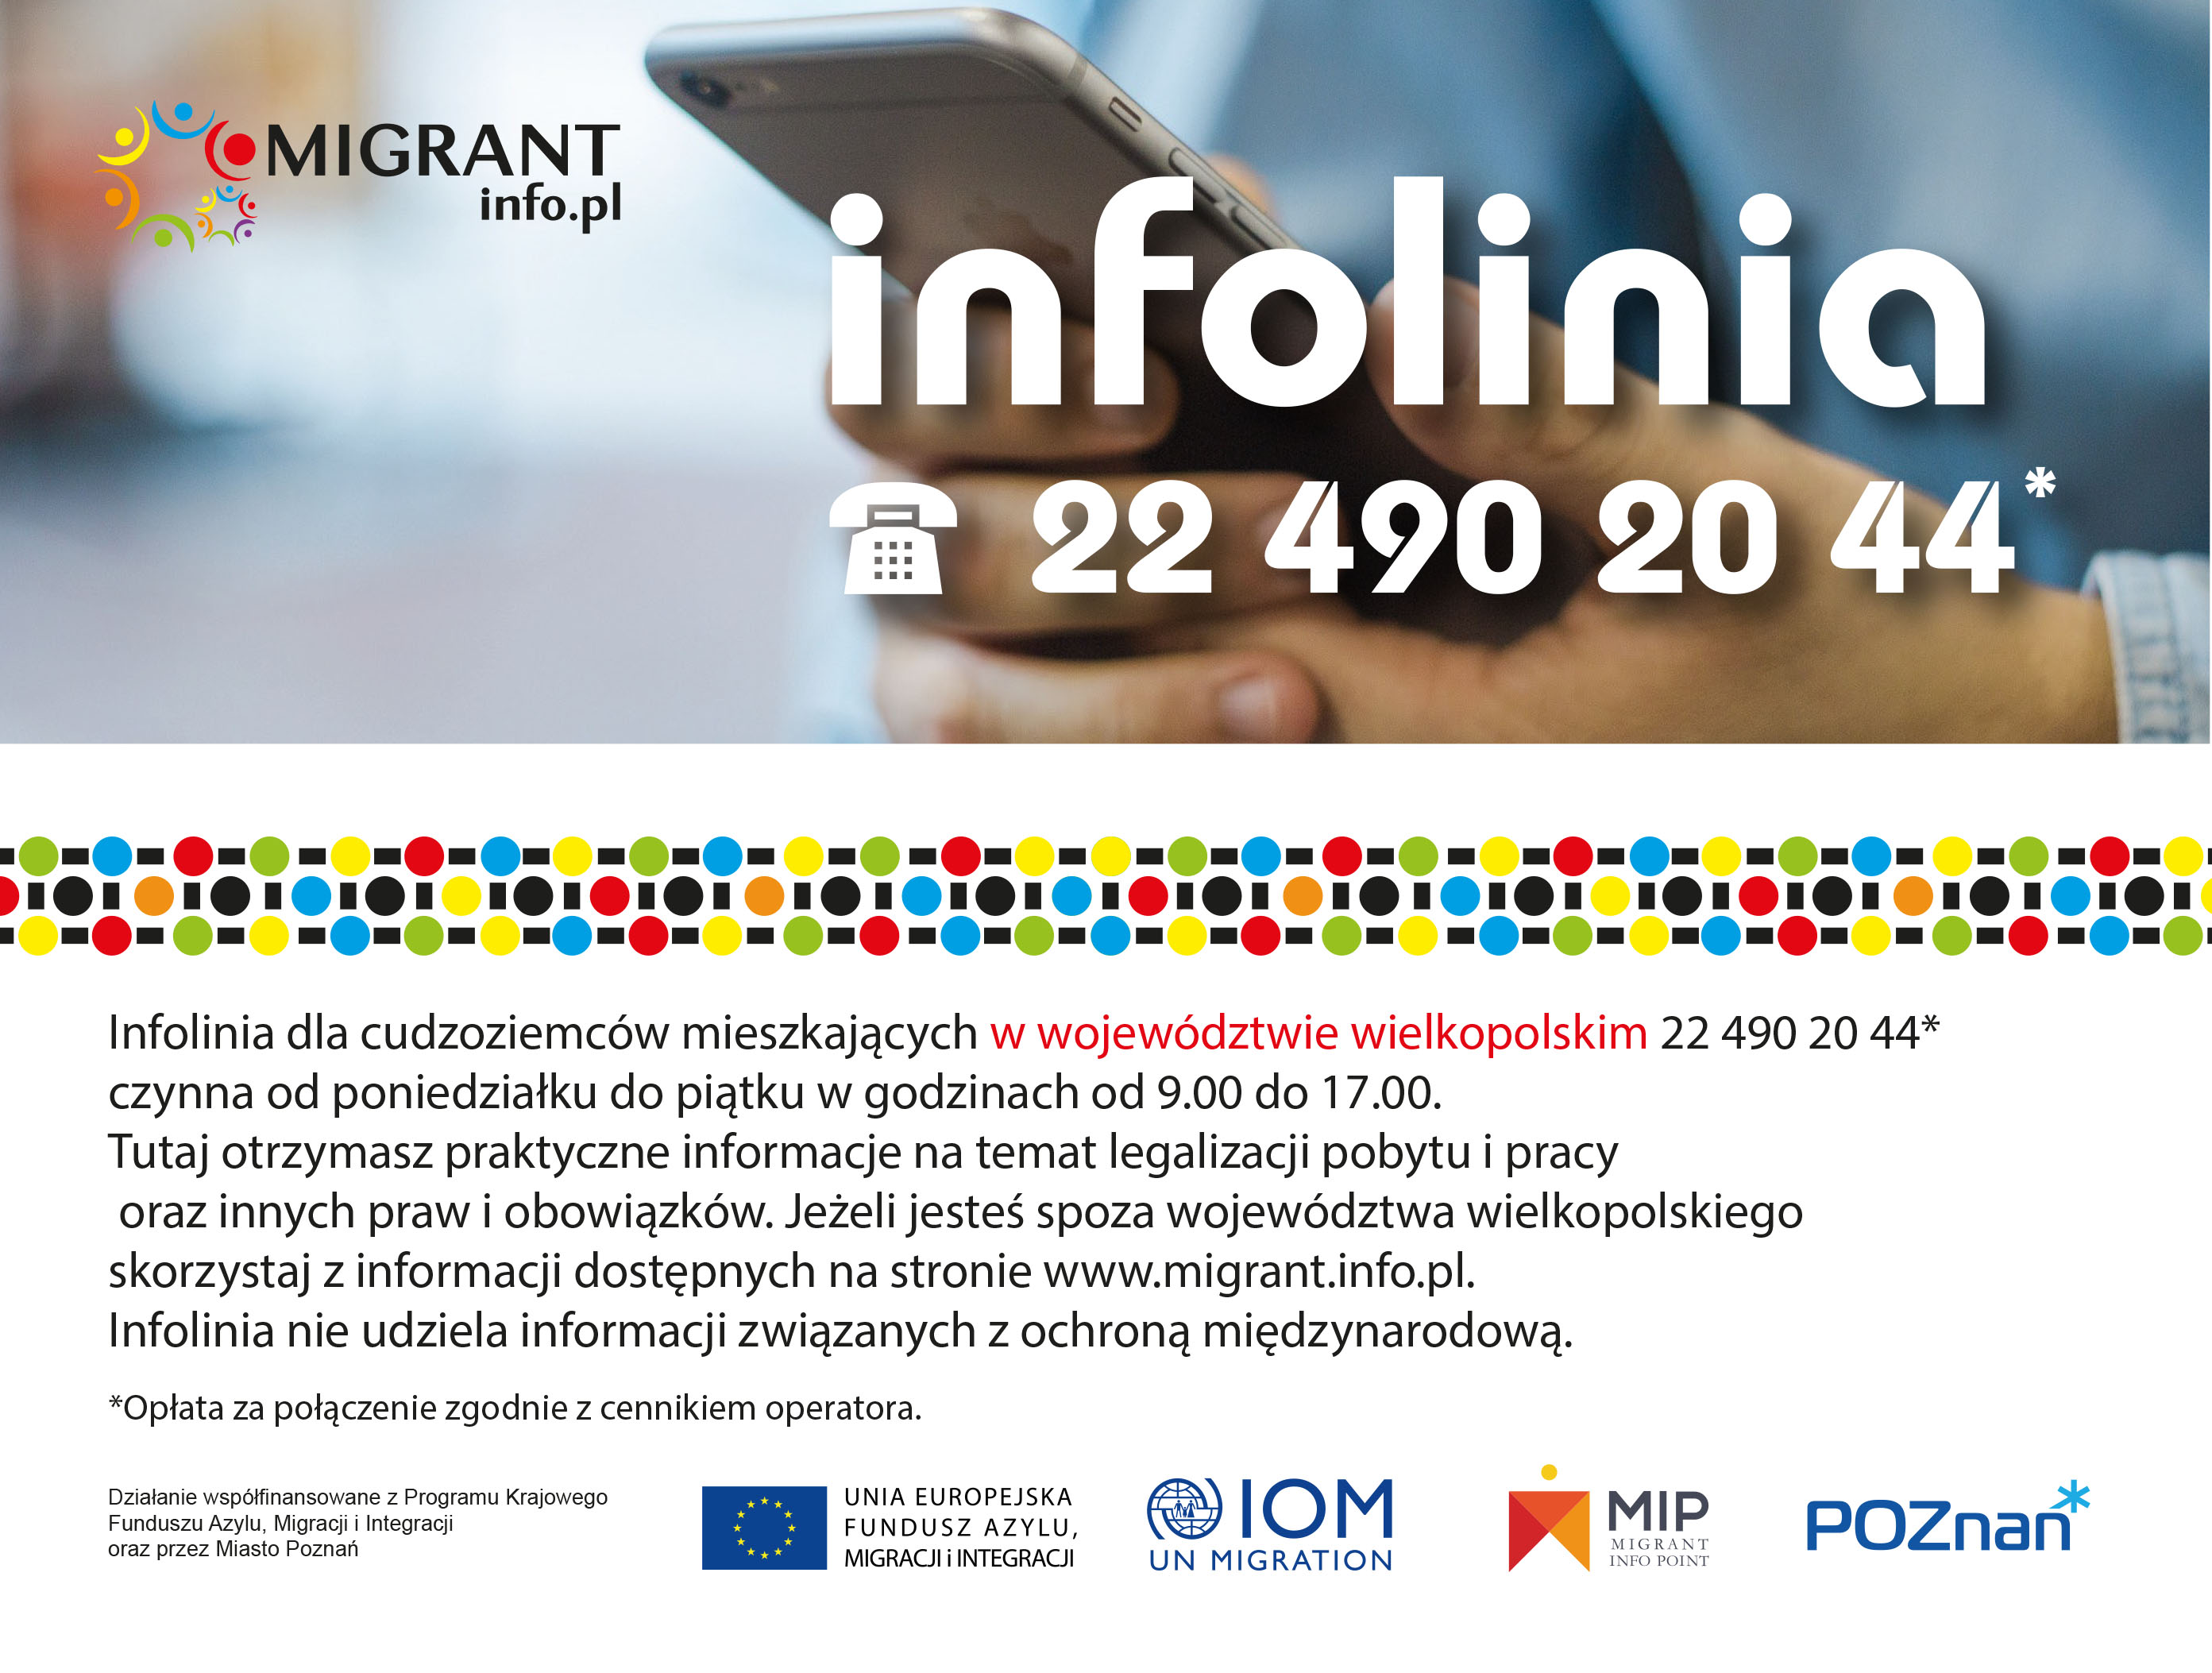 Migrant.info.pl - wielkopolska infolinia dla cudzoziemców